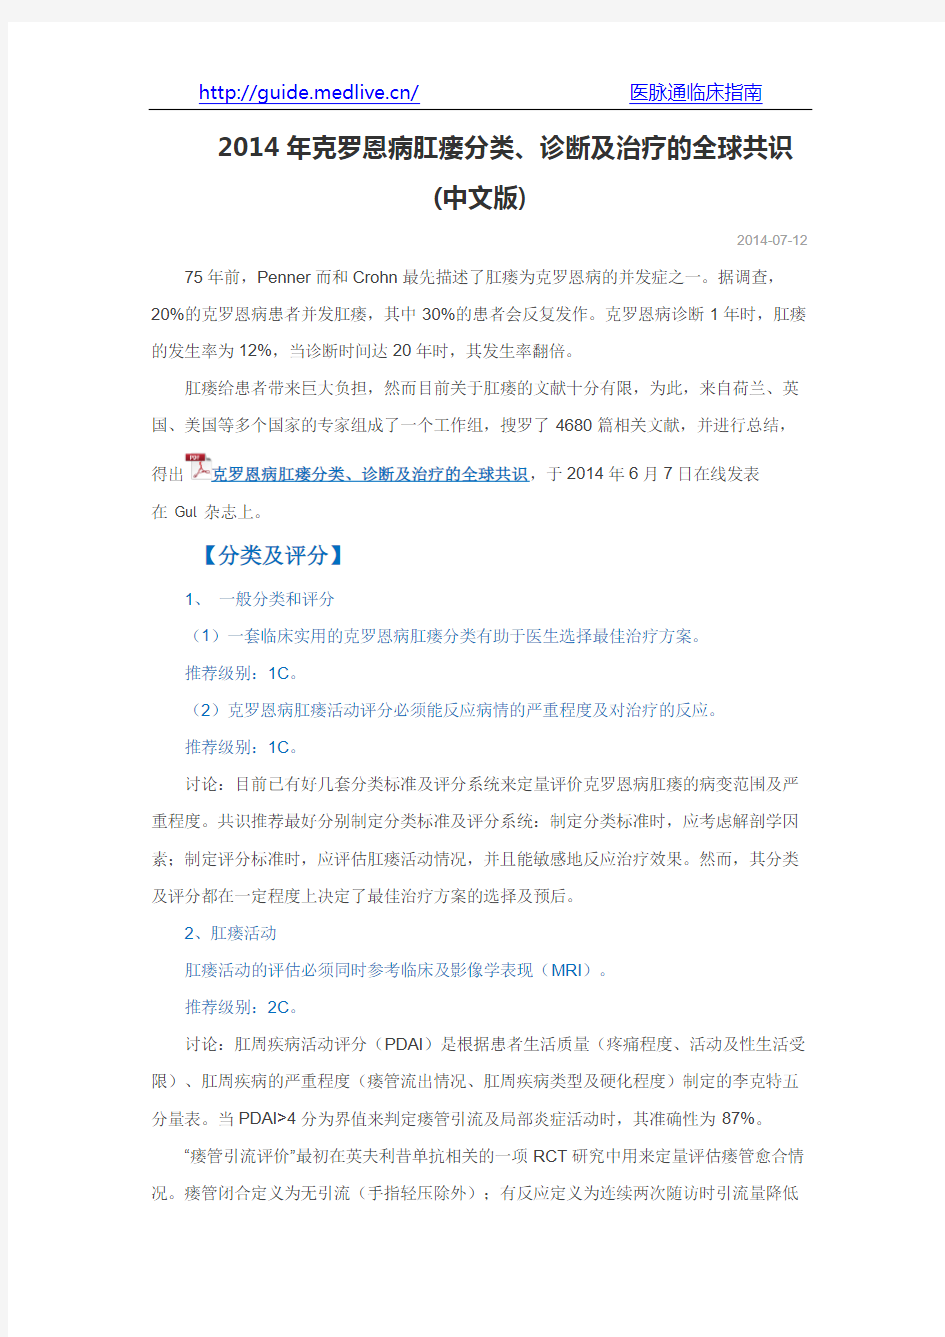 2014年克罗恩病肛瘘分类、诊断及治疗的全球共识(中文版)